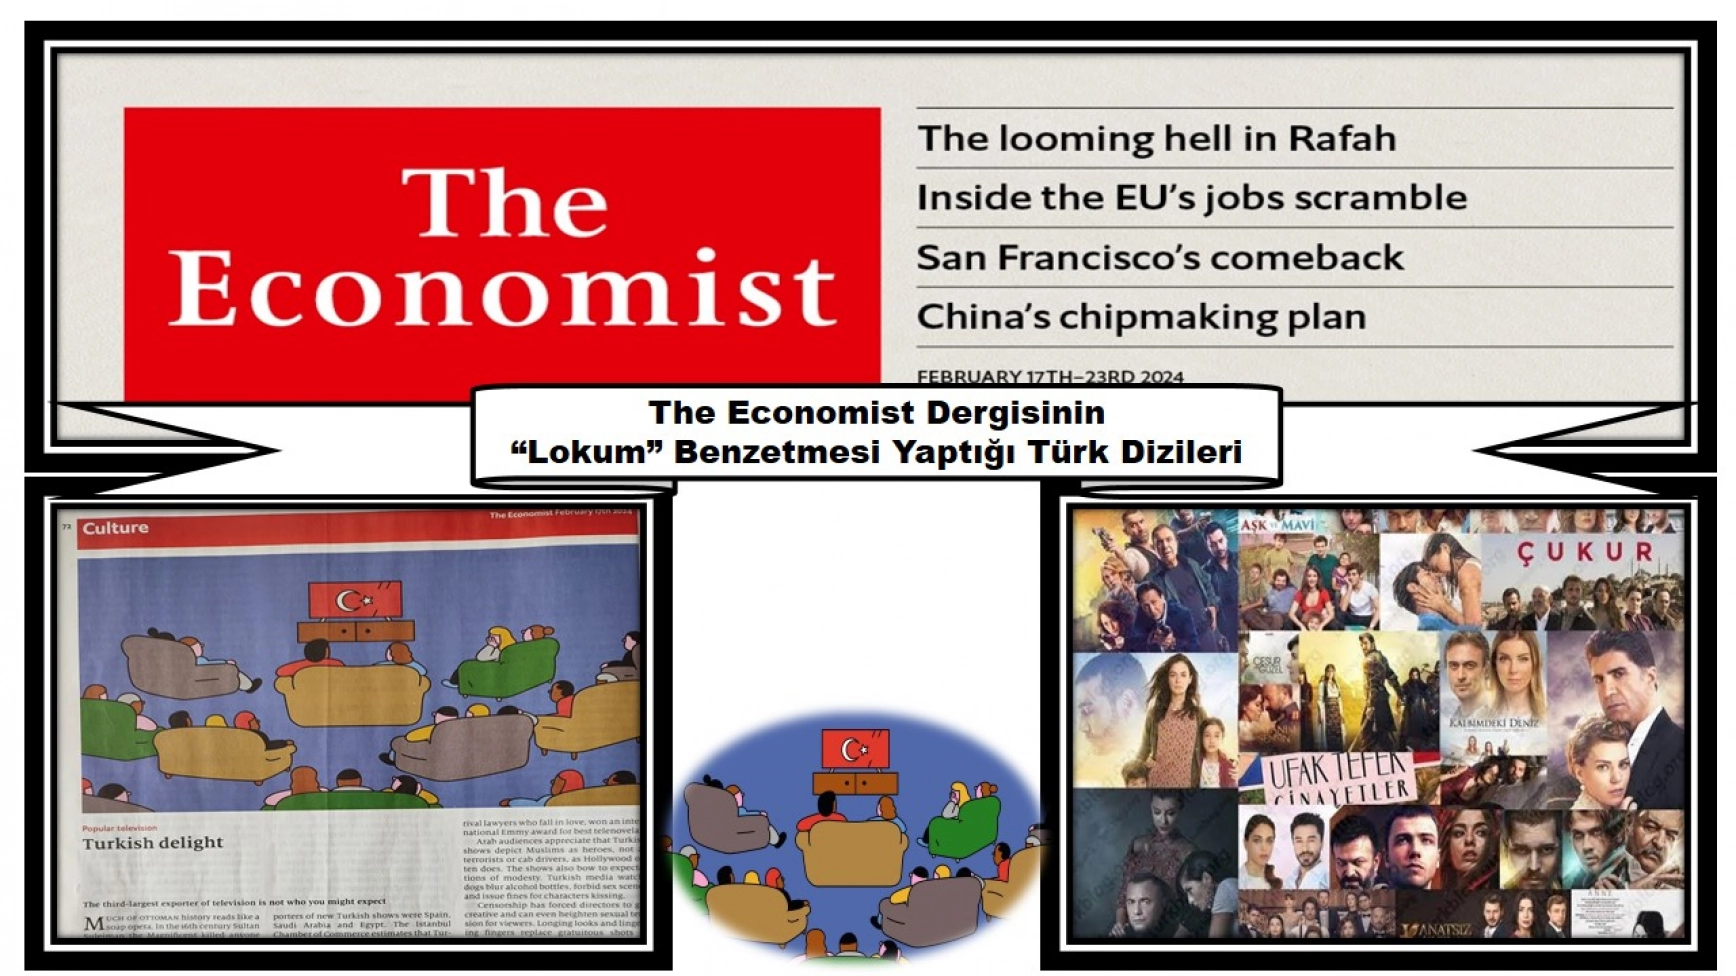 The Economist Dergisinin “Lokum” Benzetmesi Yaptığı Türk Dizileri